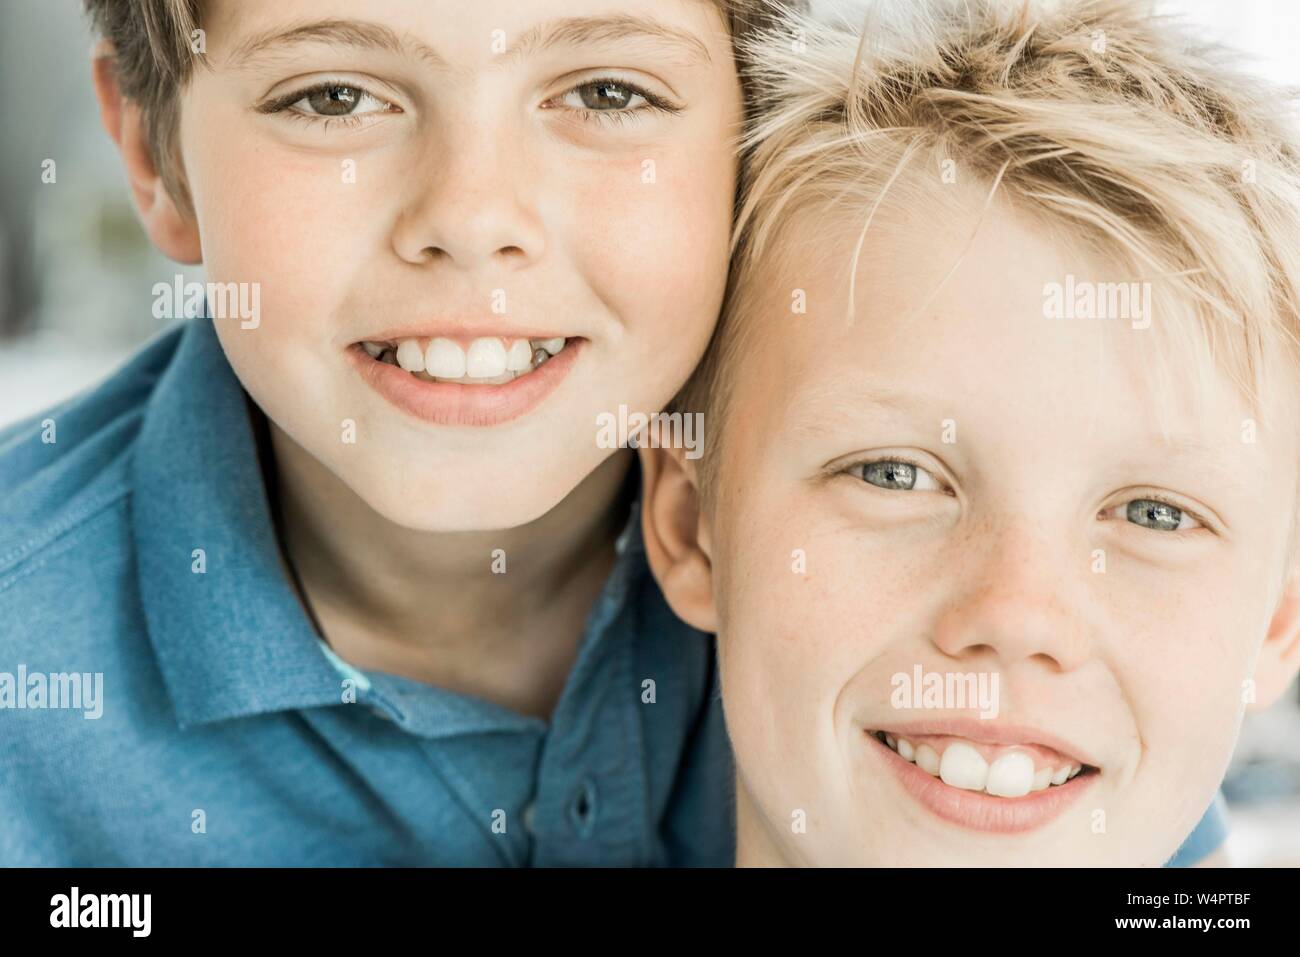 Deux garçons, amis, 10 ans, à sourire dans l'appareil photo, Portraits, Allemagne Banque D'Images